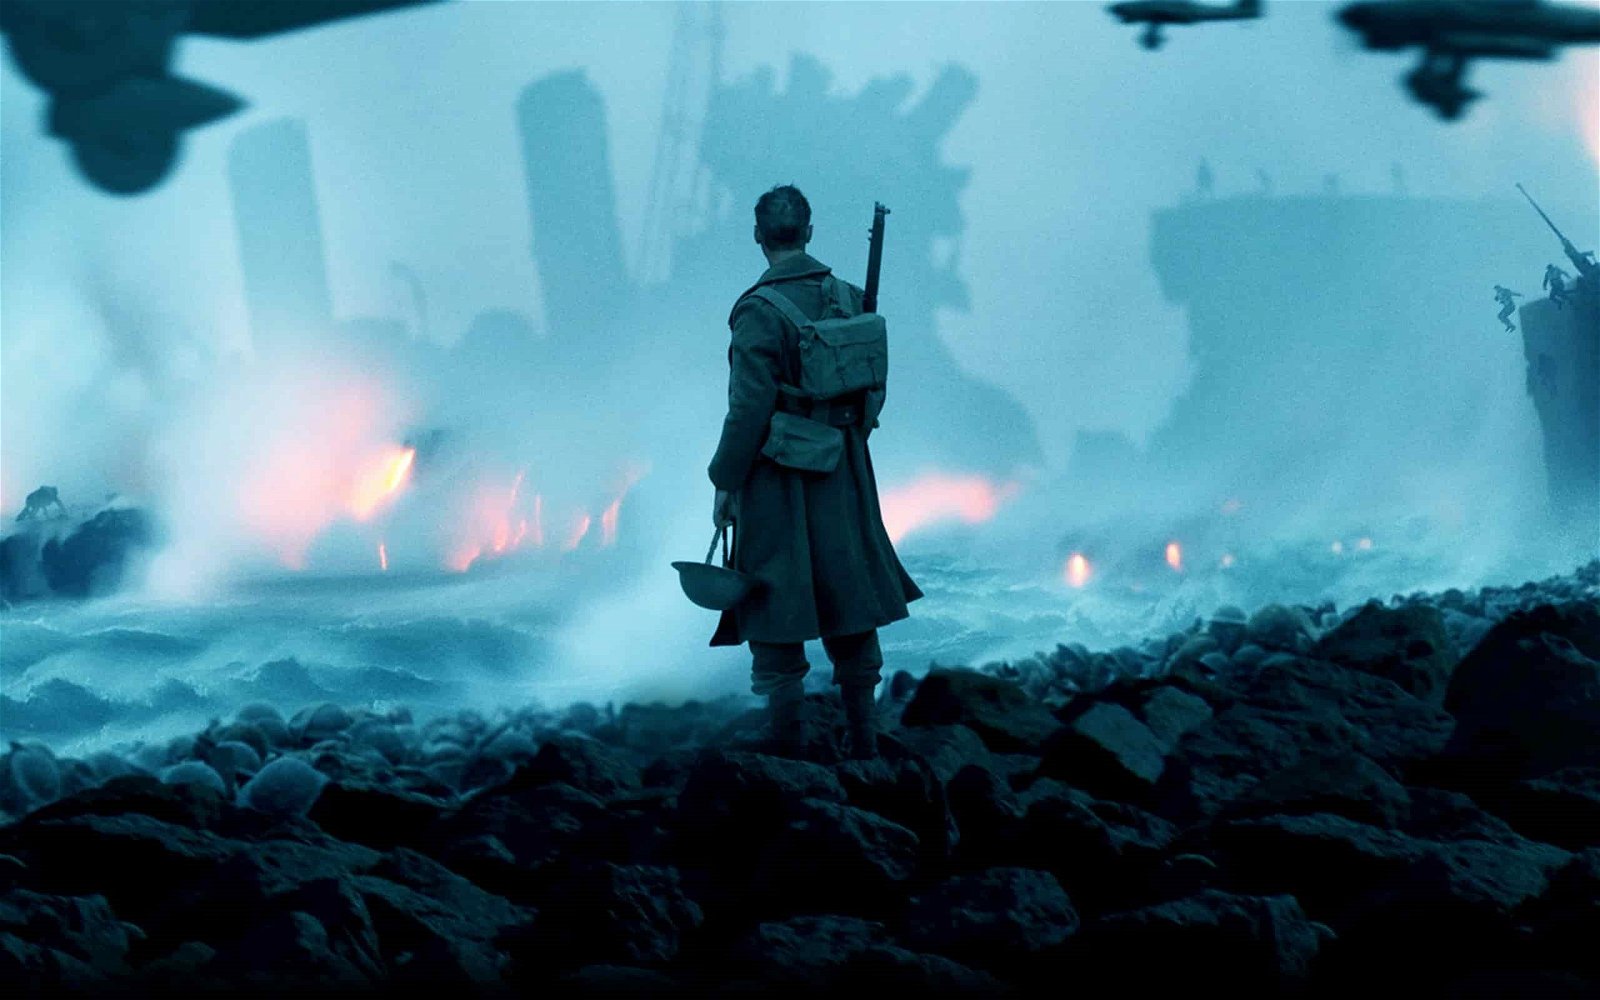 Poster till Dunkirk av Christopher Nolan - ny krigsfilm från 2017